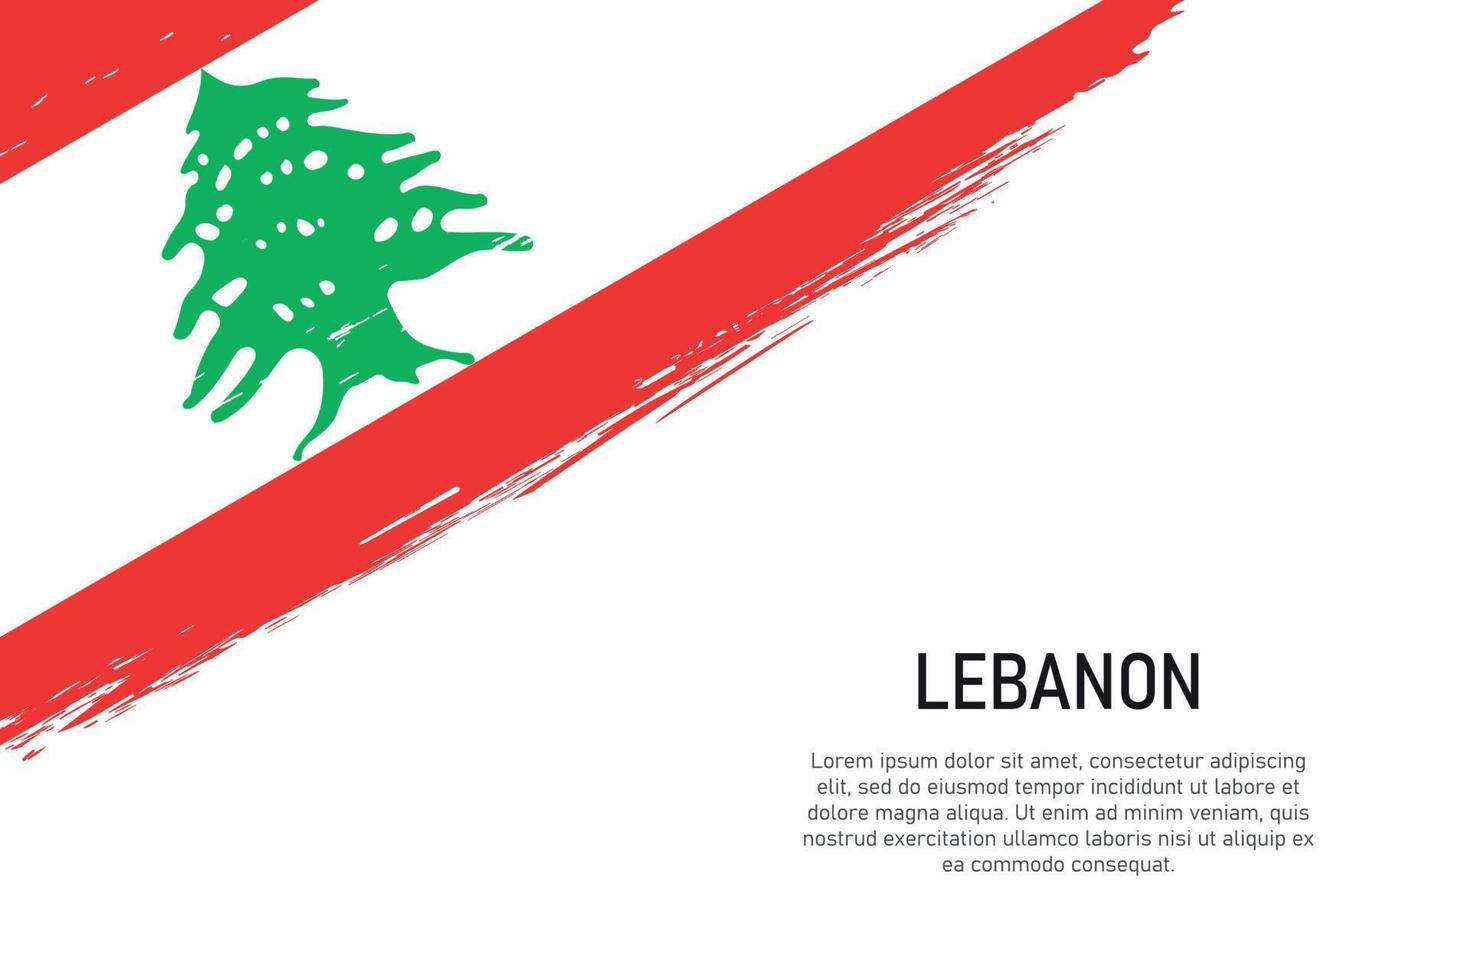 fond de coup de pinceau de style grunge avec le drapeau du liban vecteur